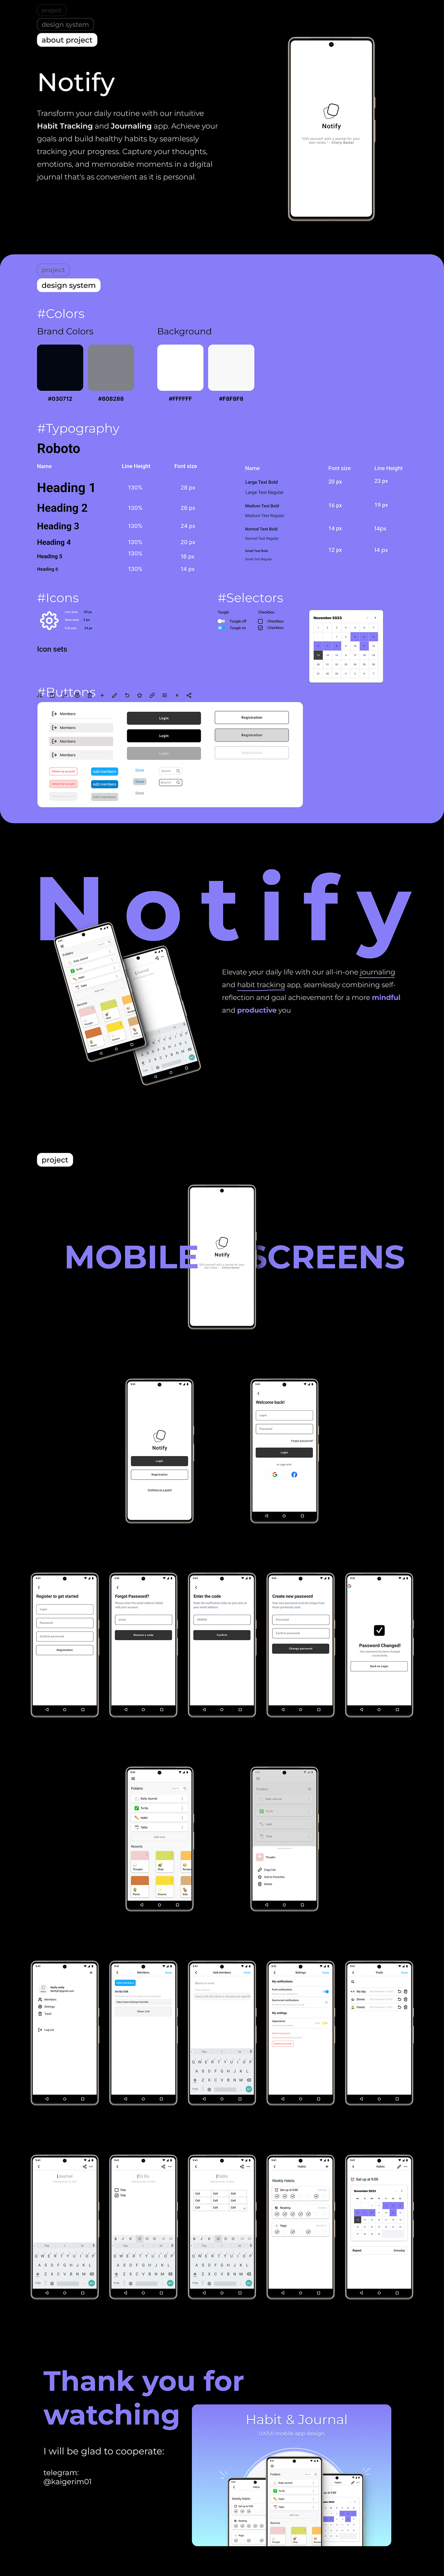 design Mobile app UX design ui design UI/UX